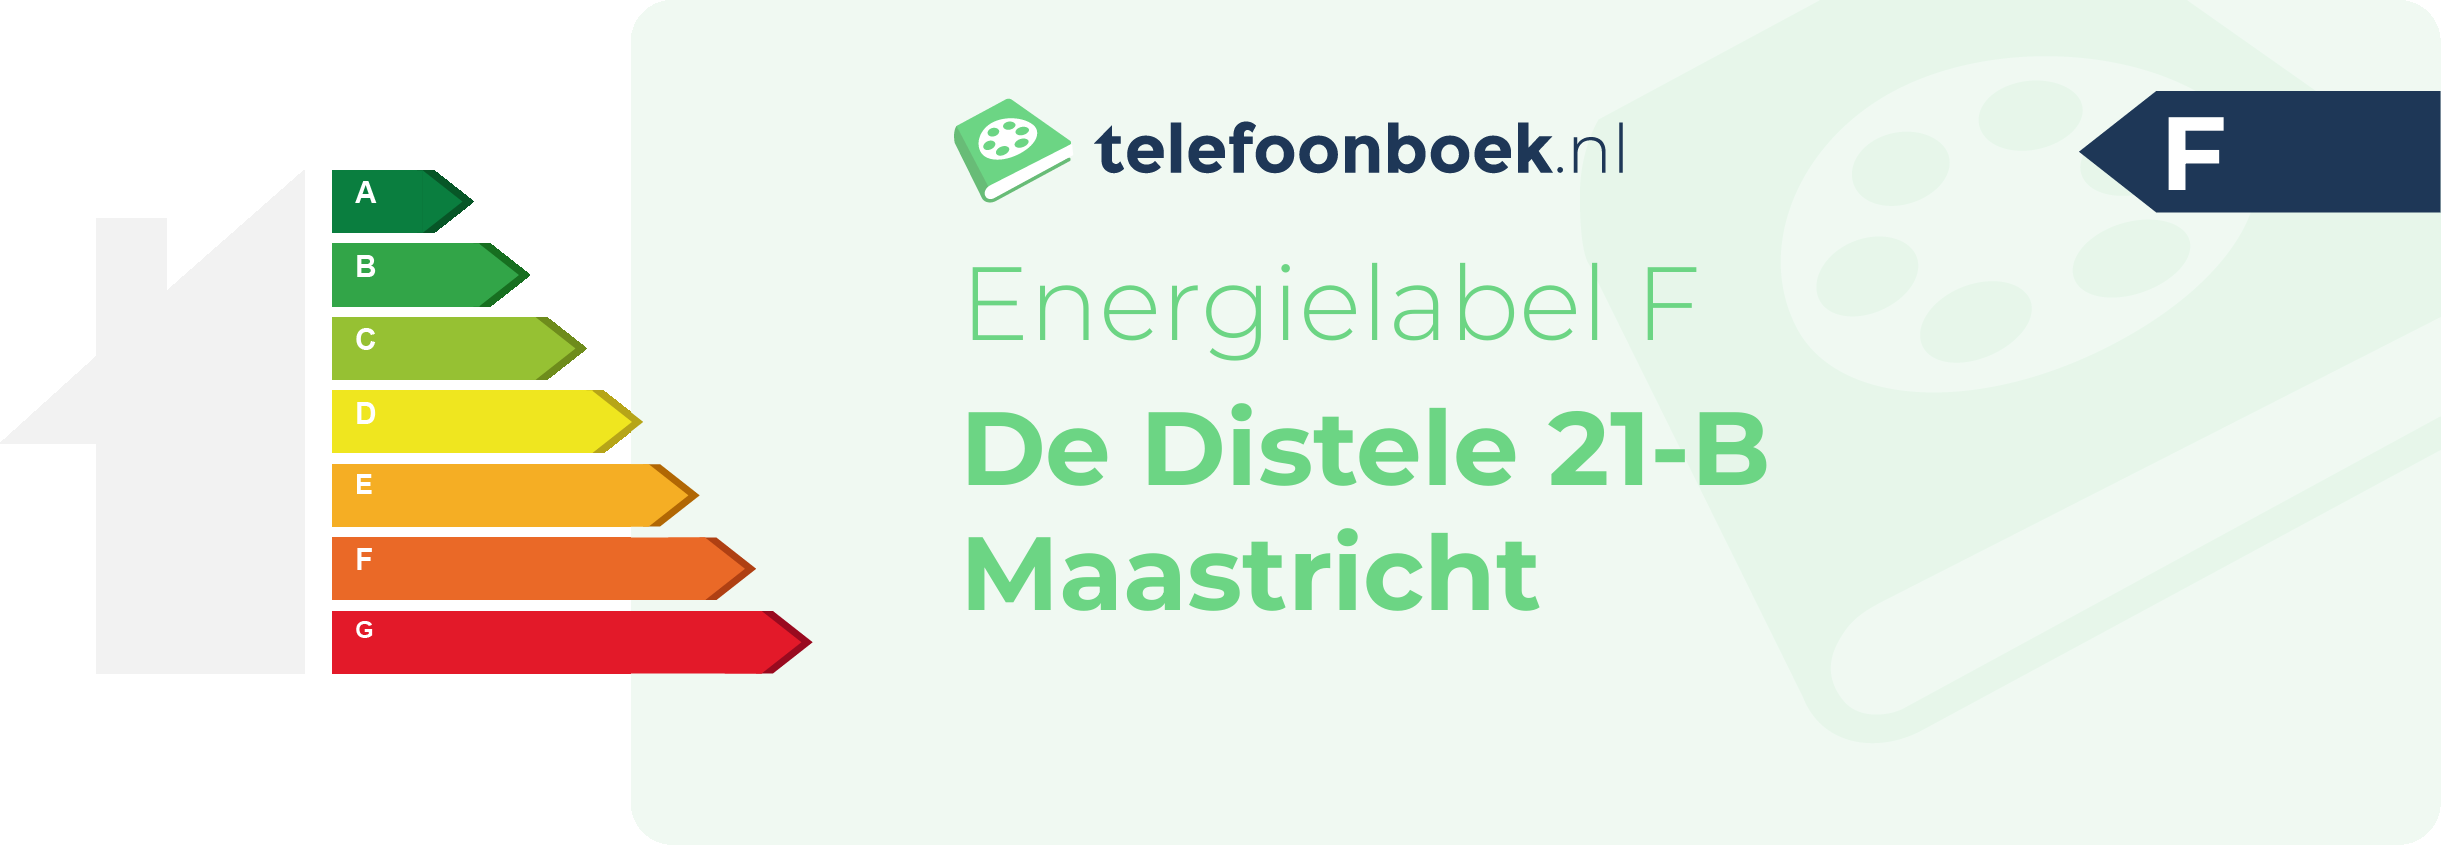 Energielabel De Distele 21-B Maastricht